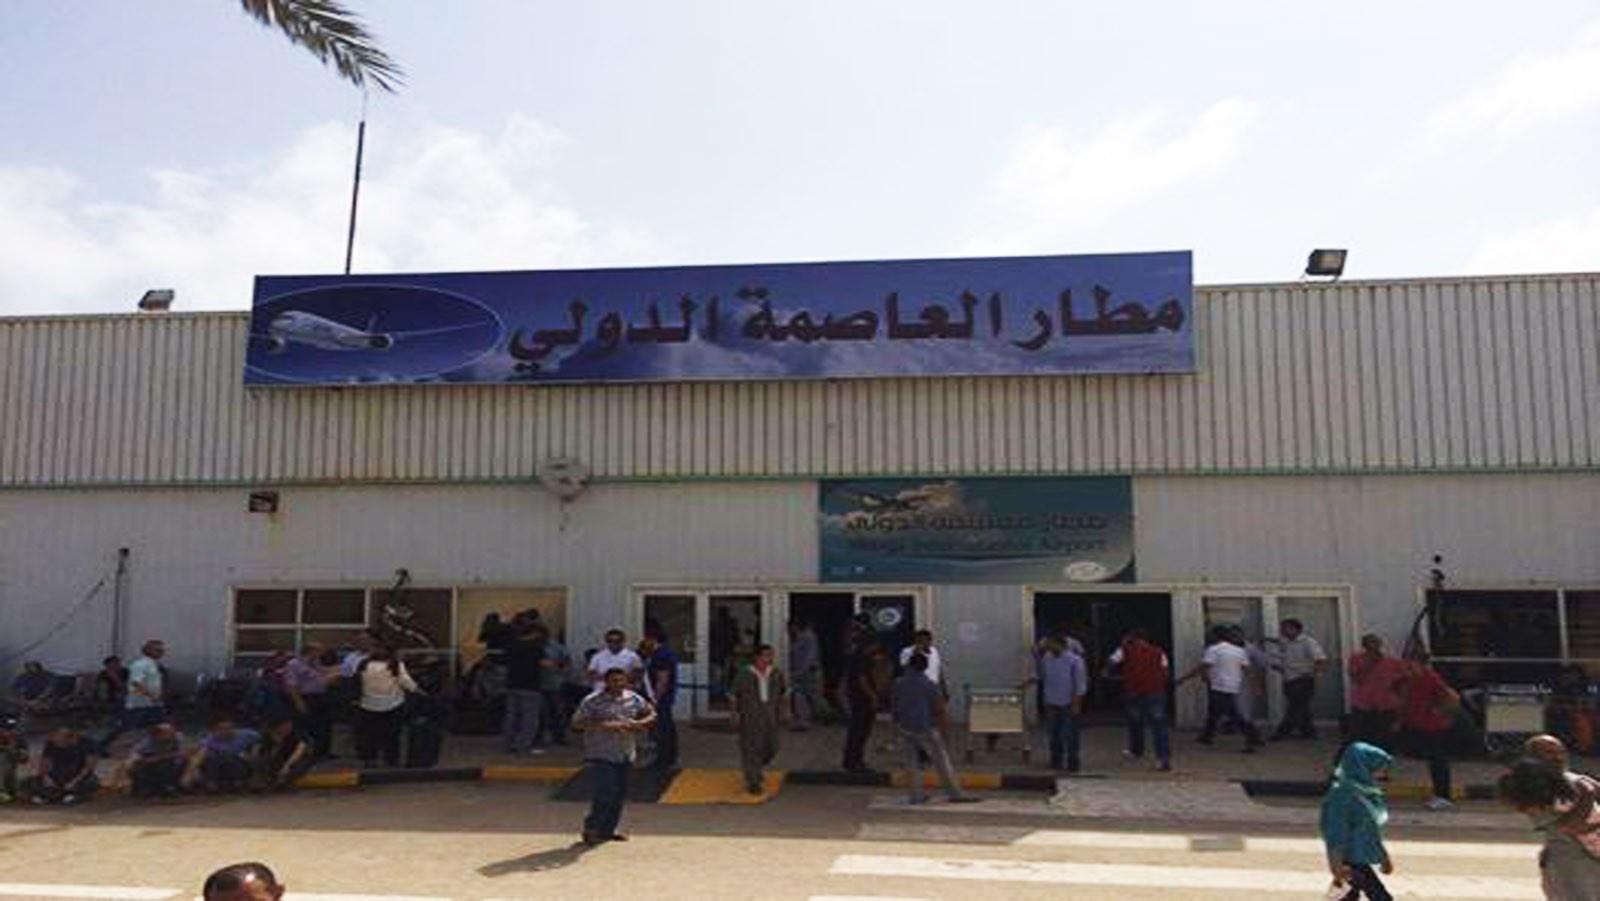   إعادة فتح مطار معيتيقة في طرابلس بعد إغلاقه بسبب اشتباكات 